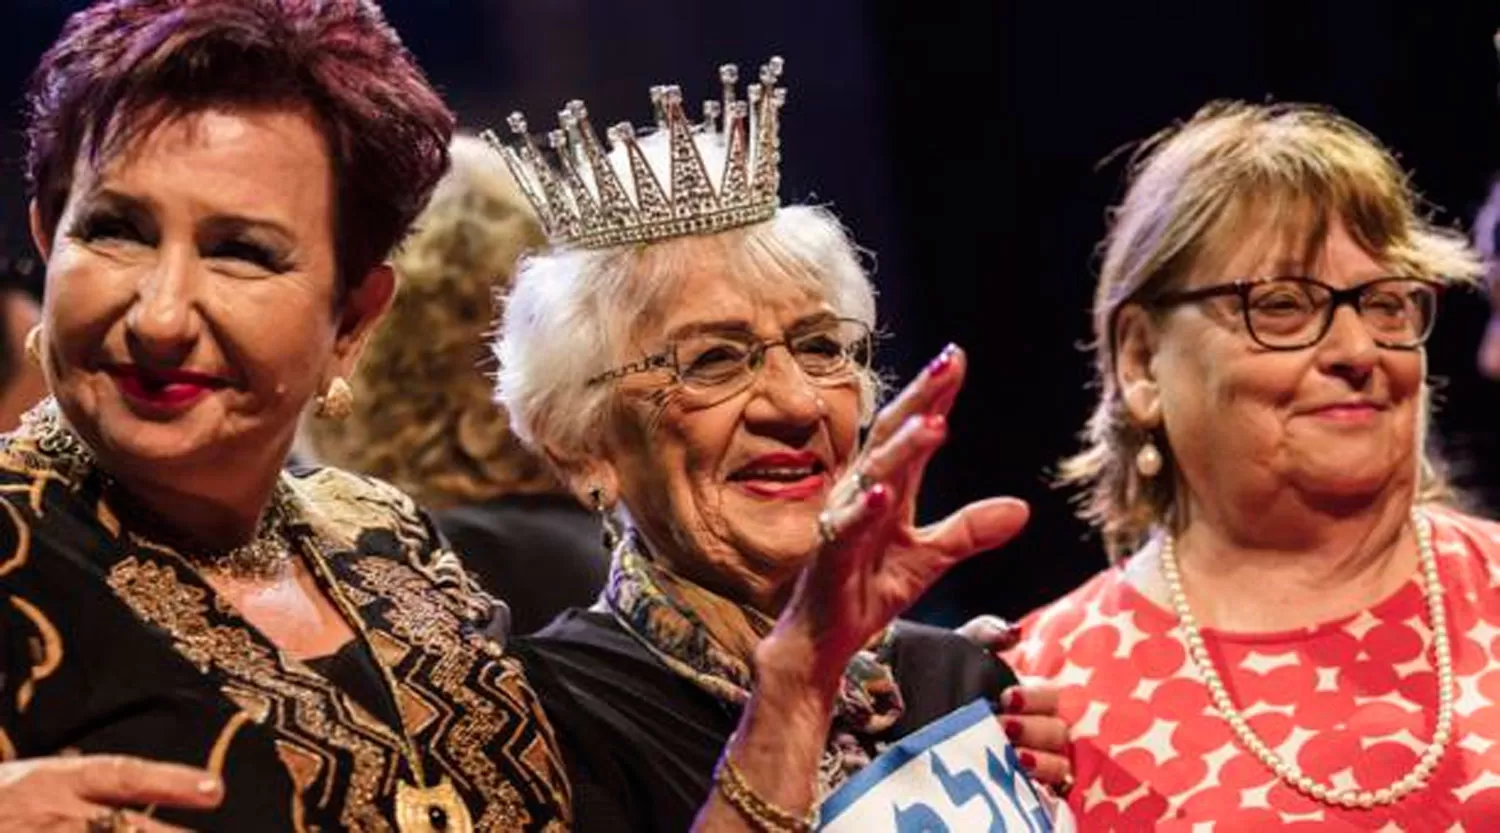 TOVA RINGER. Tiene 93 años y ganó el concurso Miss Holocausto.